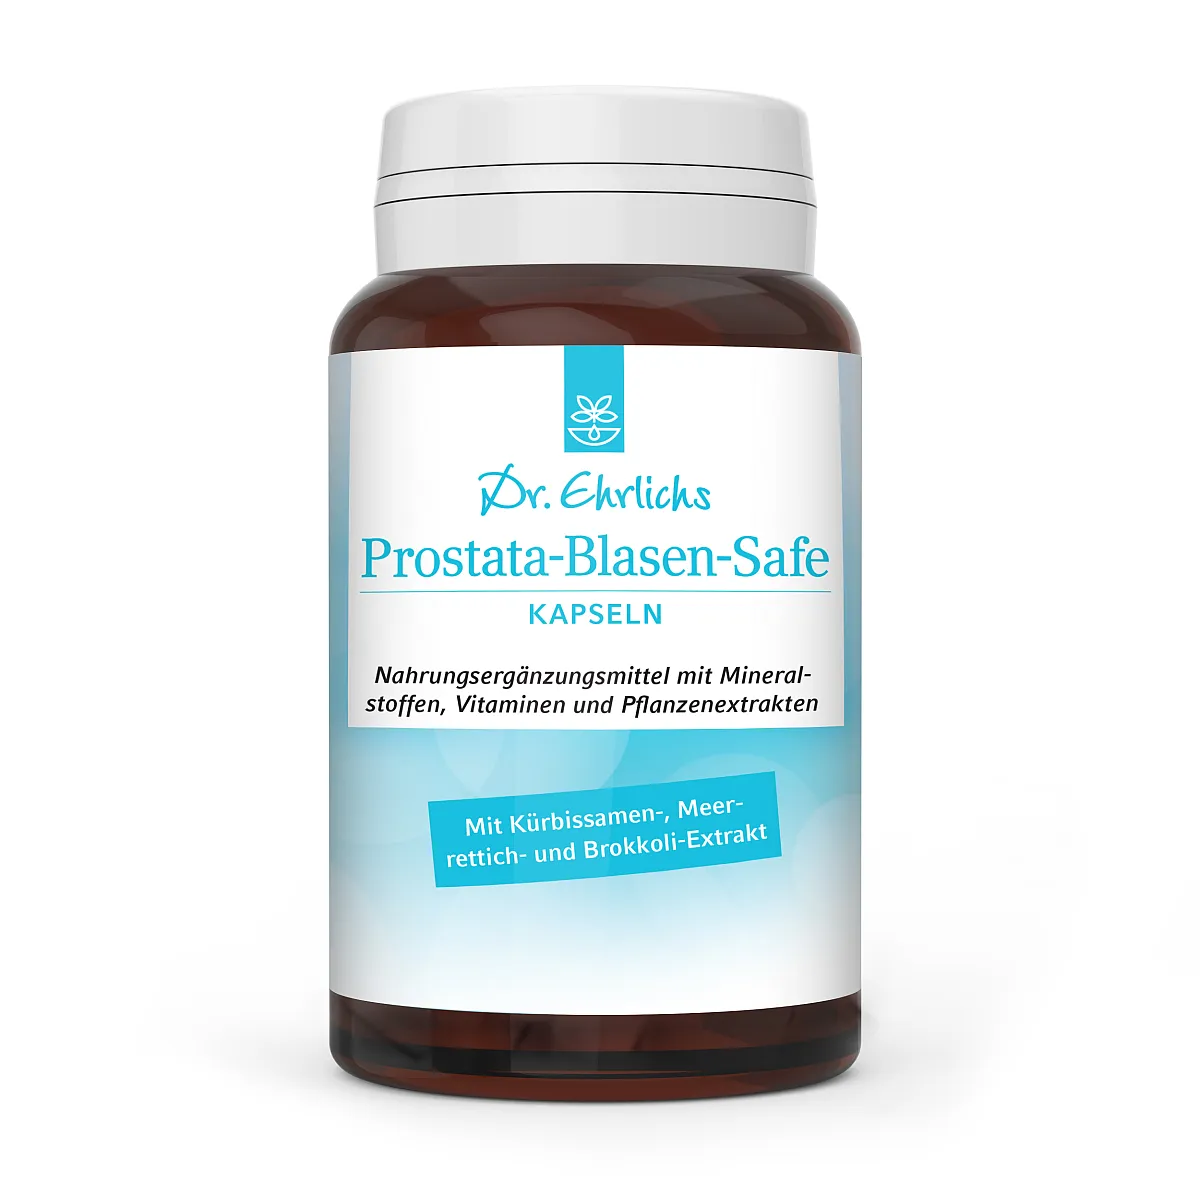 Abbildung Dosen-Frontseite der Dr. Ehrlichs Prostata-Blasen-Safe Kapseln zur Unterstützung einer normalen Funktion von Prostata und Blase 